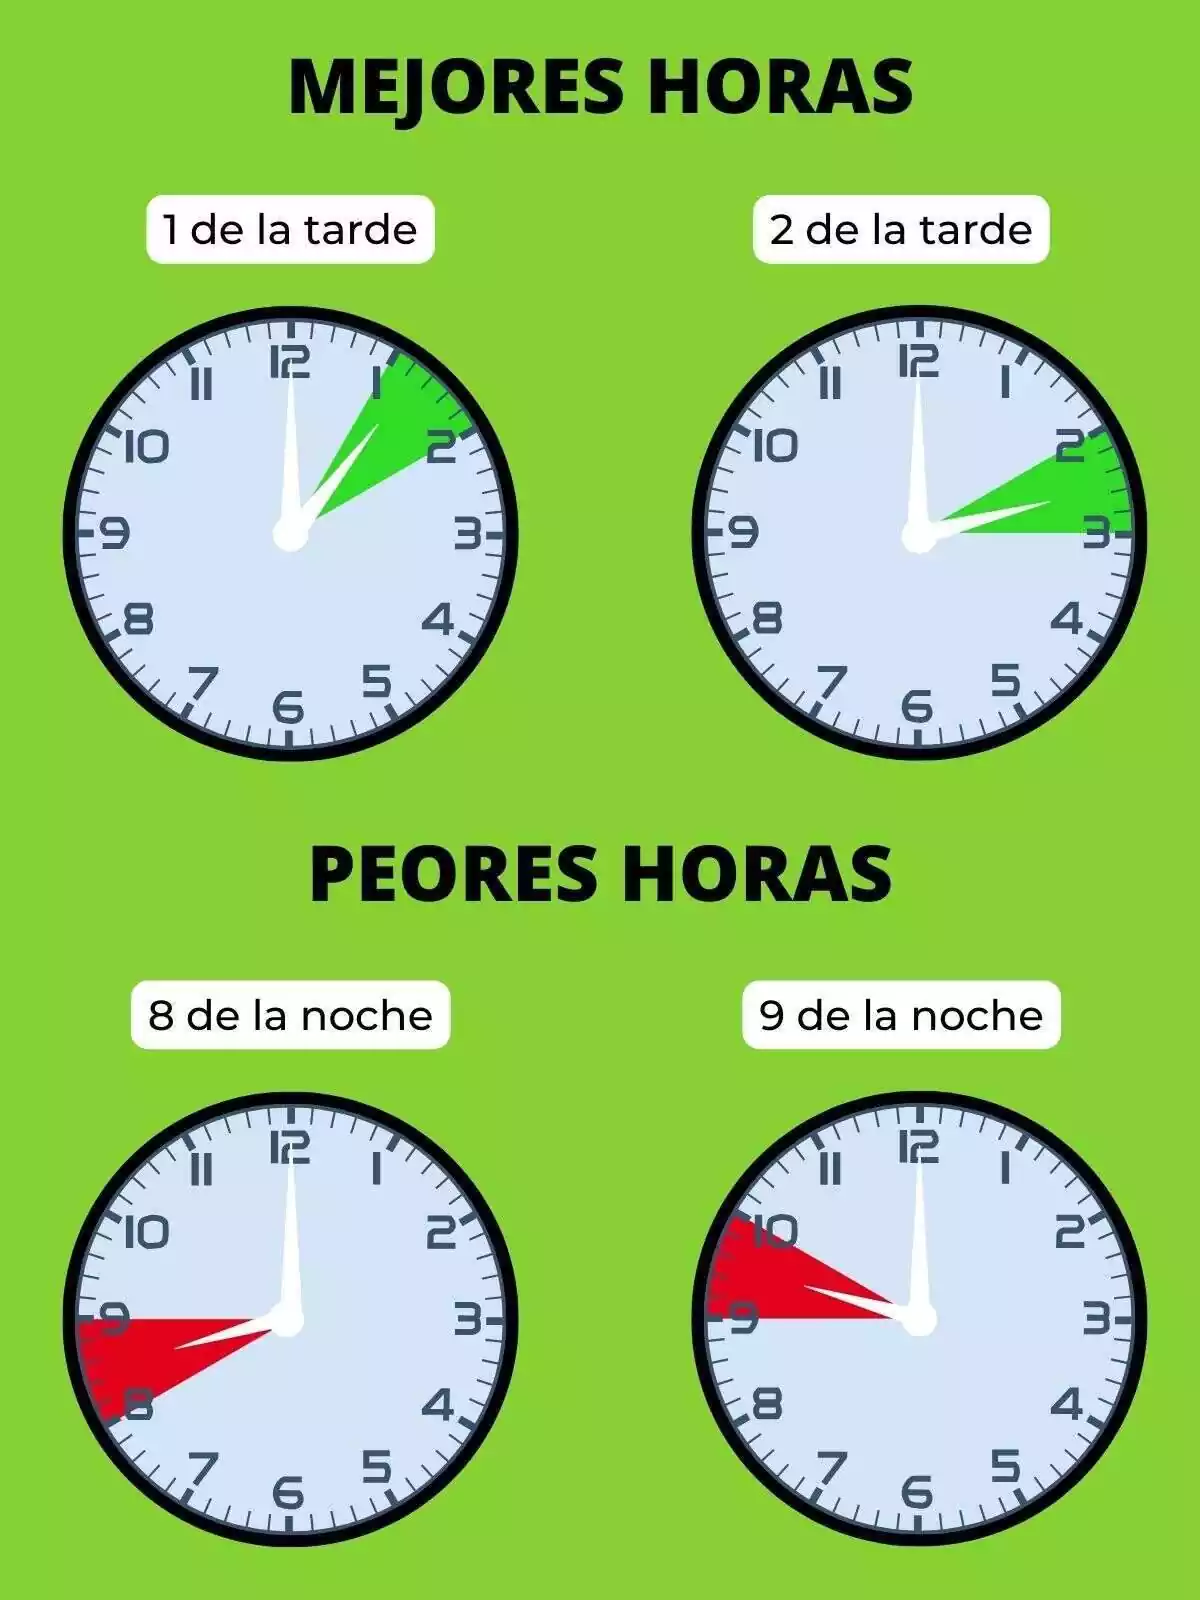 Cuatro relojes que muestran las mejores y las peores horas del día según el precio de la luz